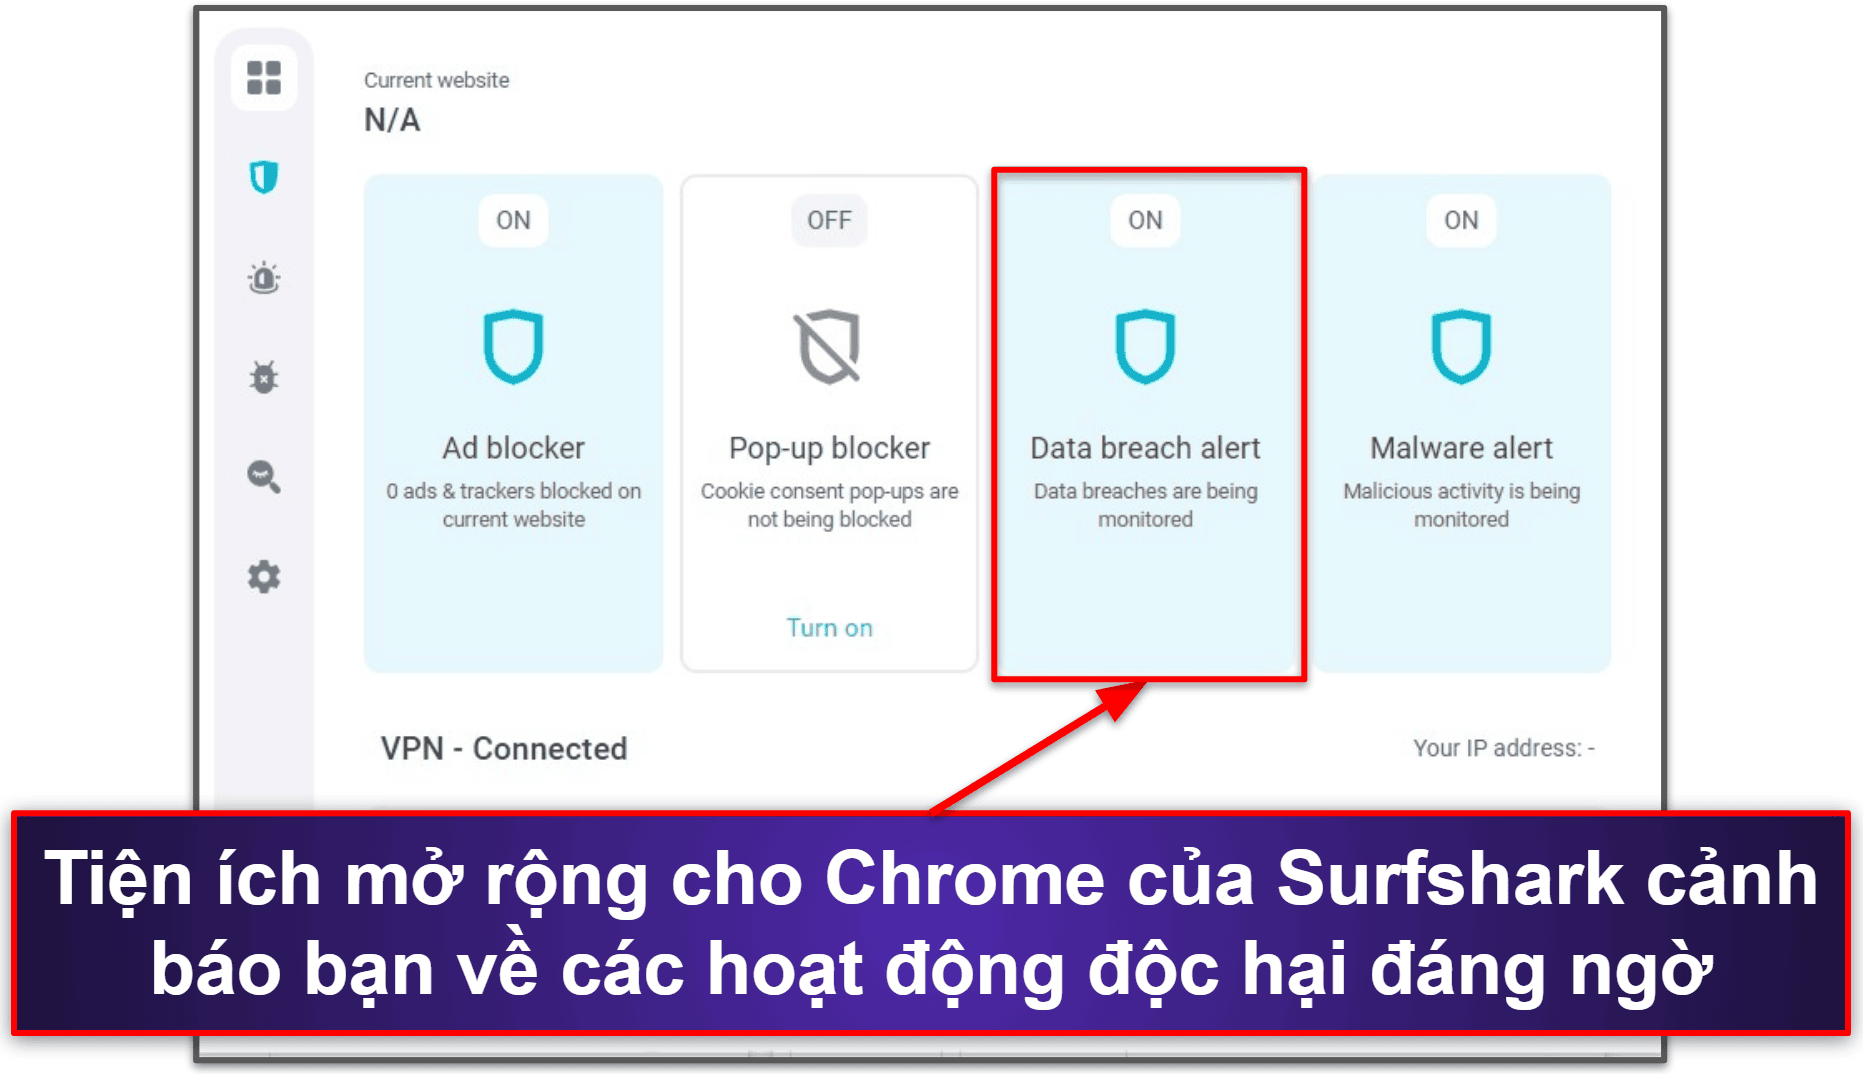 4. Surfshark — VPN Chrome tuyệt vời với mạng lưới máy chủ lớn